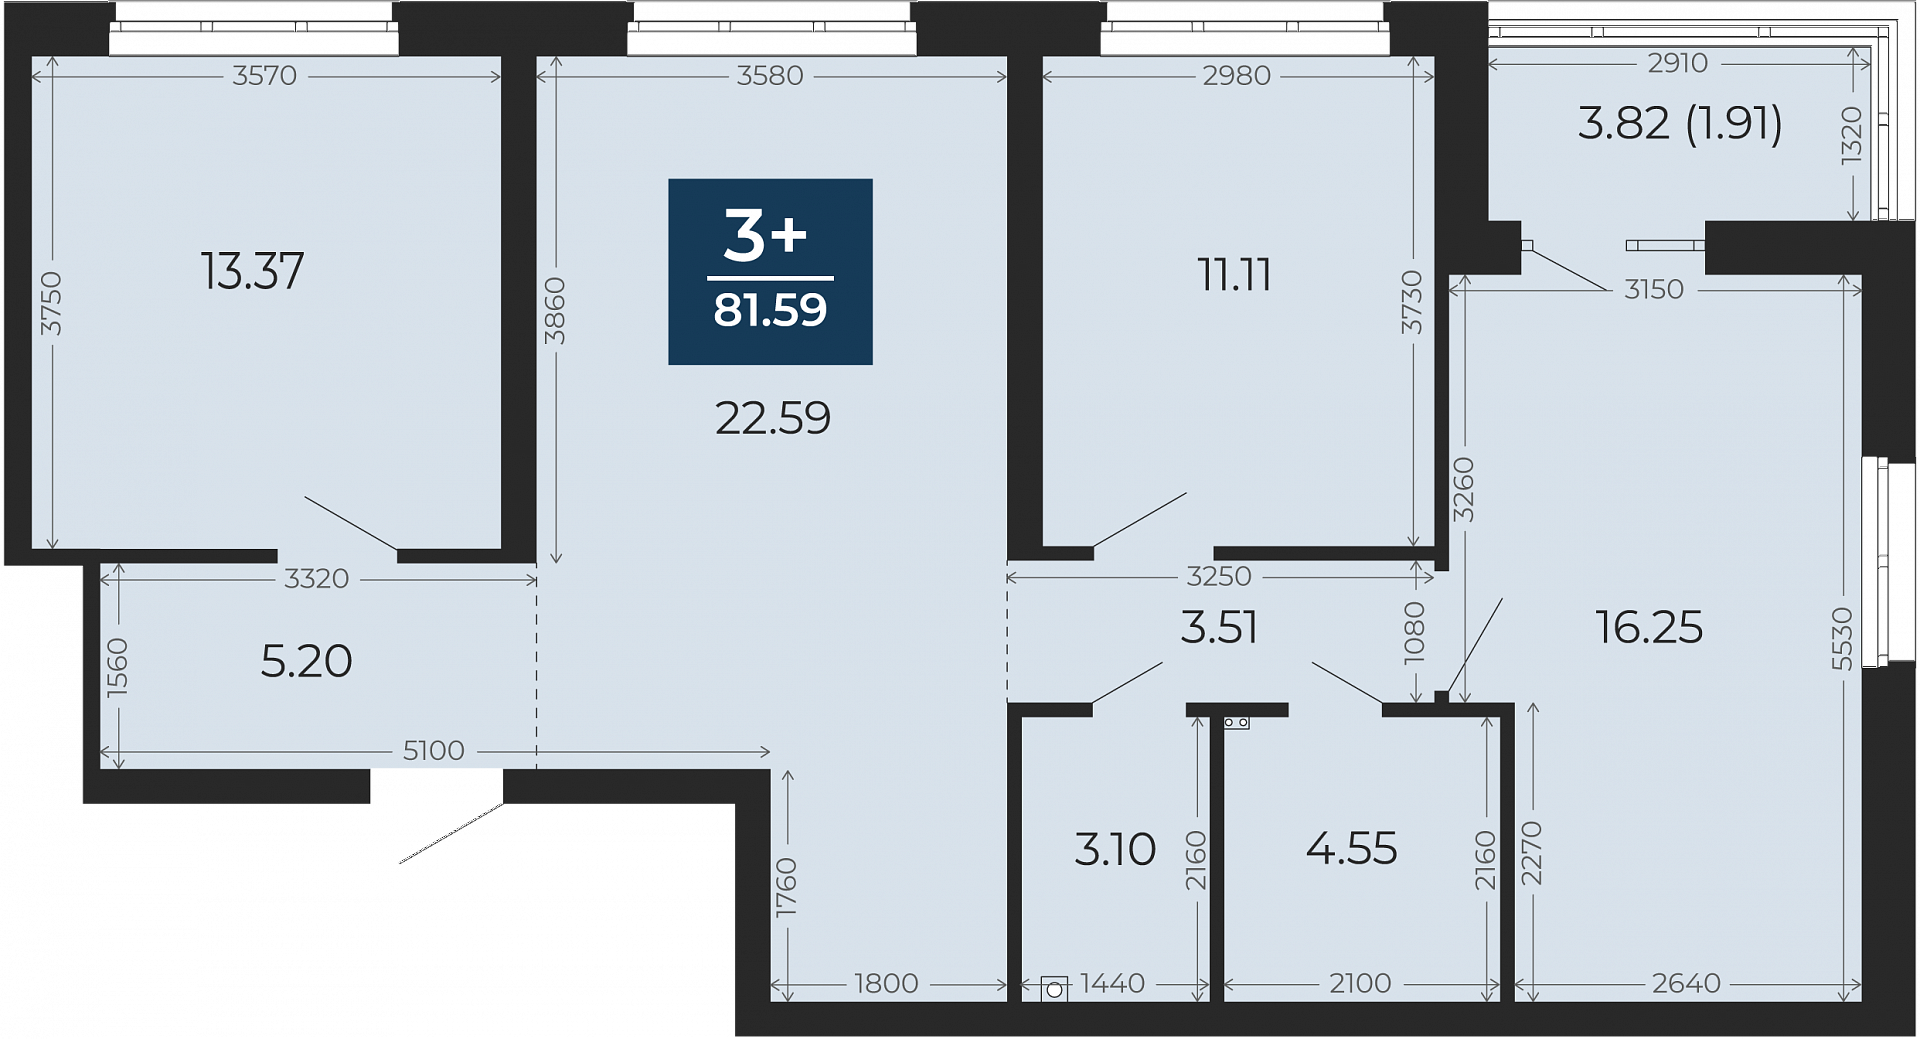 Квартира № 349, 3-комнатная, 81.59 кв. м, 2 этаж